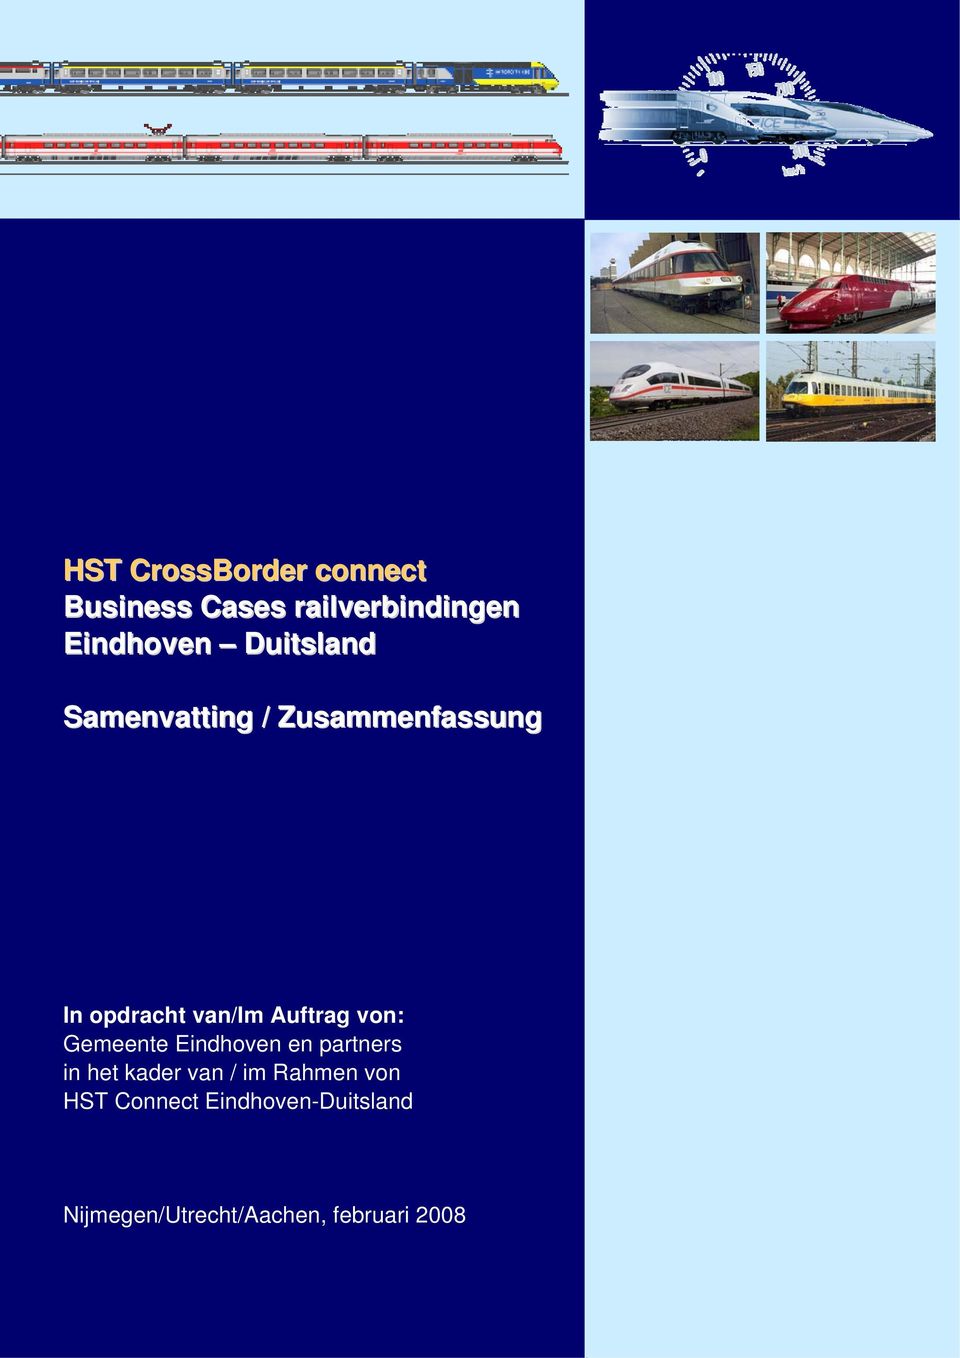 von: Gemeente Eindhoven en partners in het kader van / im Rahmen von